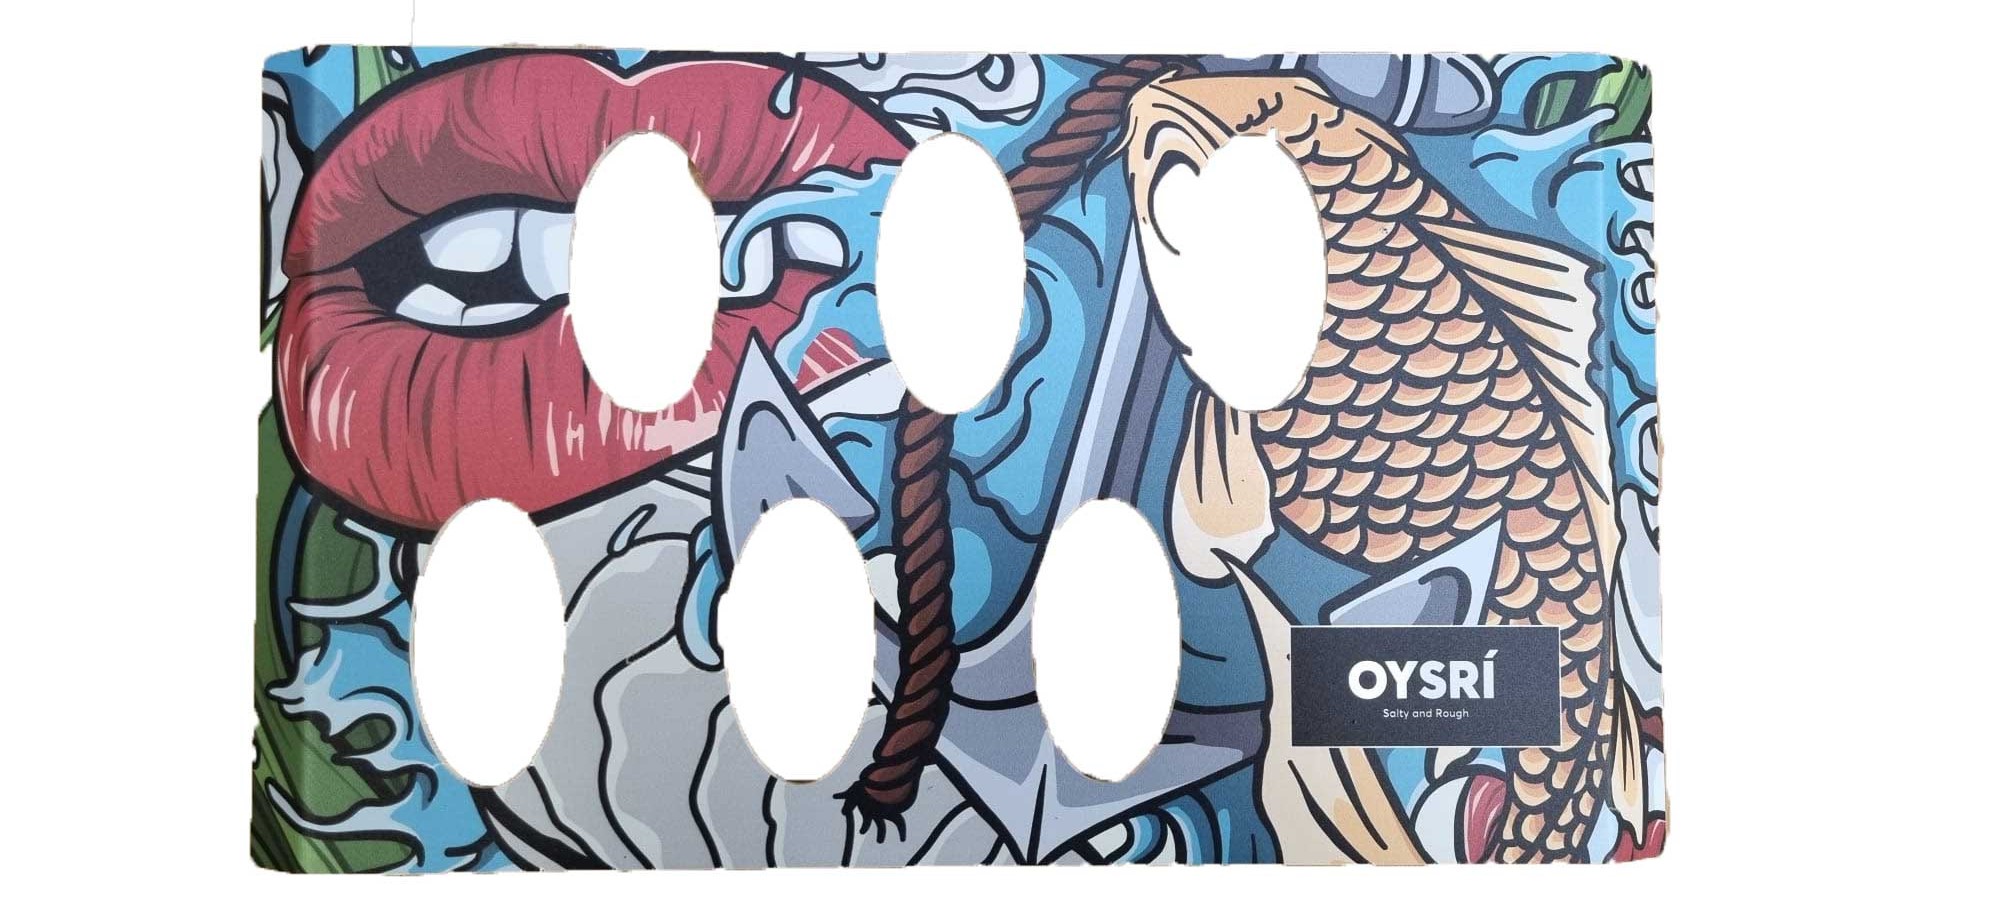 oysri oyster tray